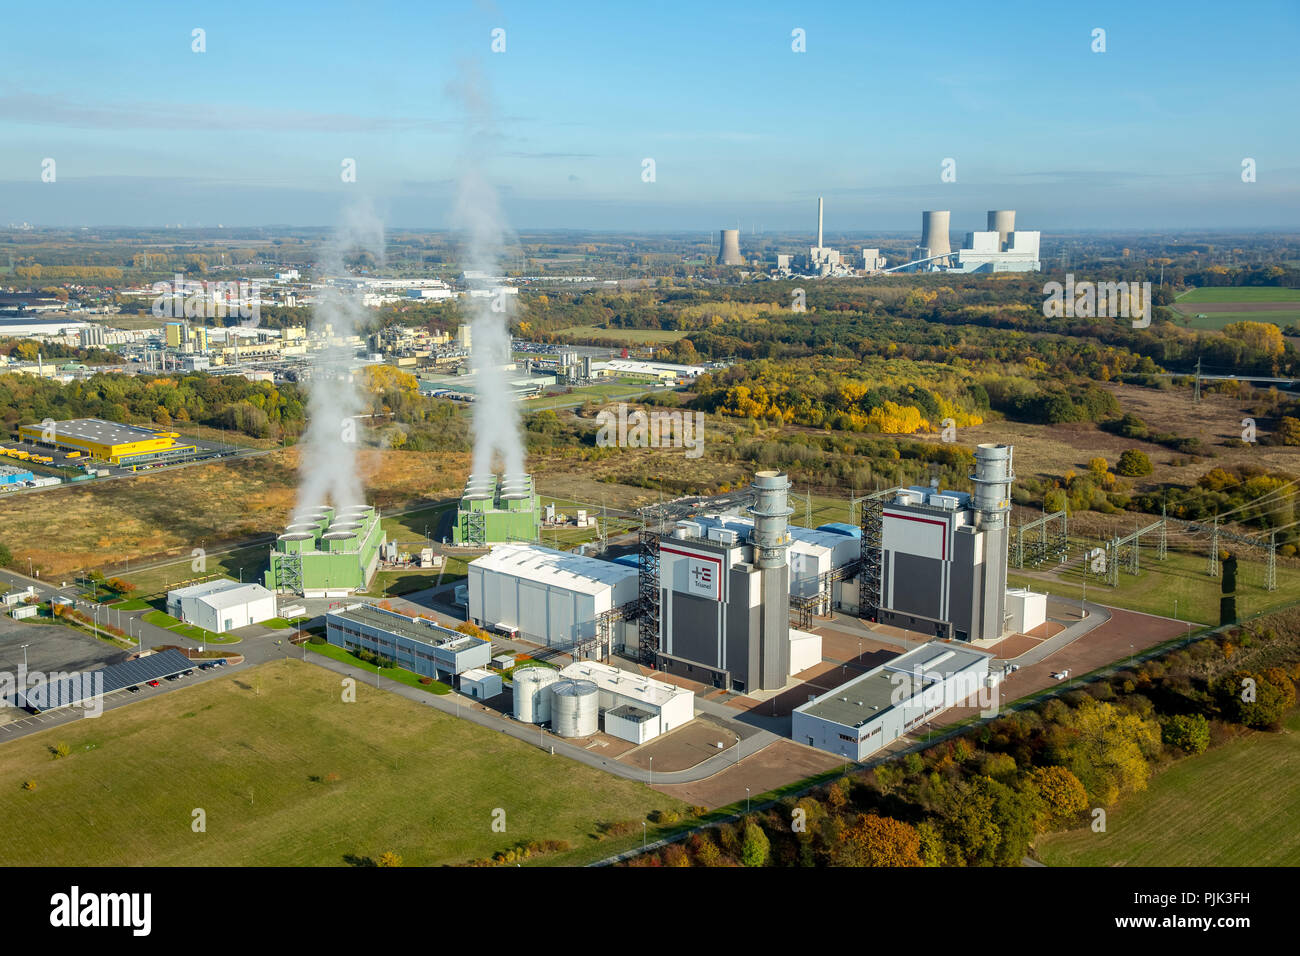 Vista aérea de la planta de energía de gas Trianel, Hamm GmbH & Co. KG, GUD, nube de humo, vapor de agua, plantas de energía de turbinas de gas en funcionamiento, Hamm, área de Ruhr, Renania del Norte-Westfalia, Alemania Foto de stock